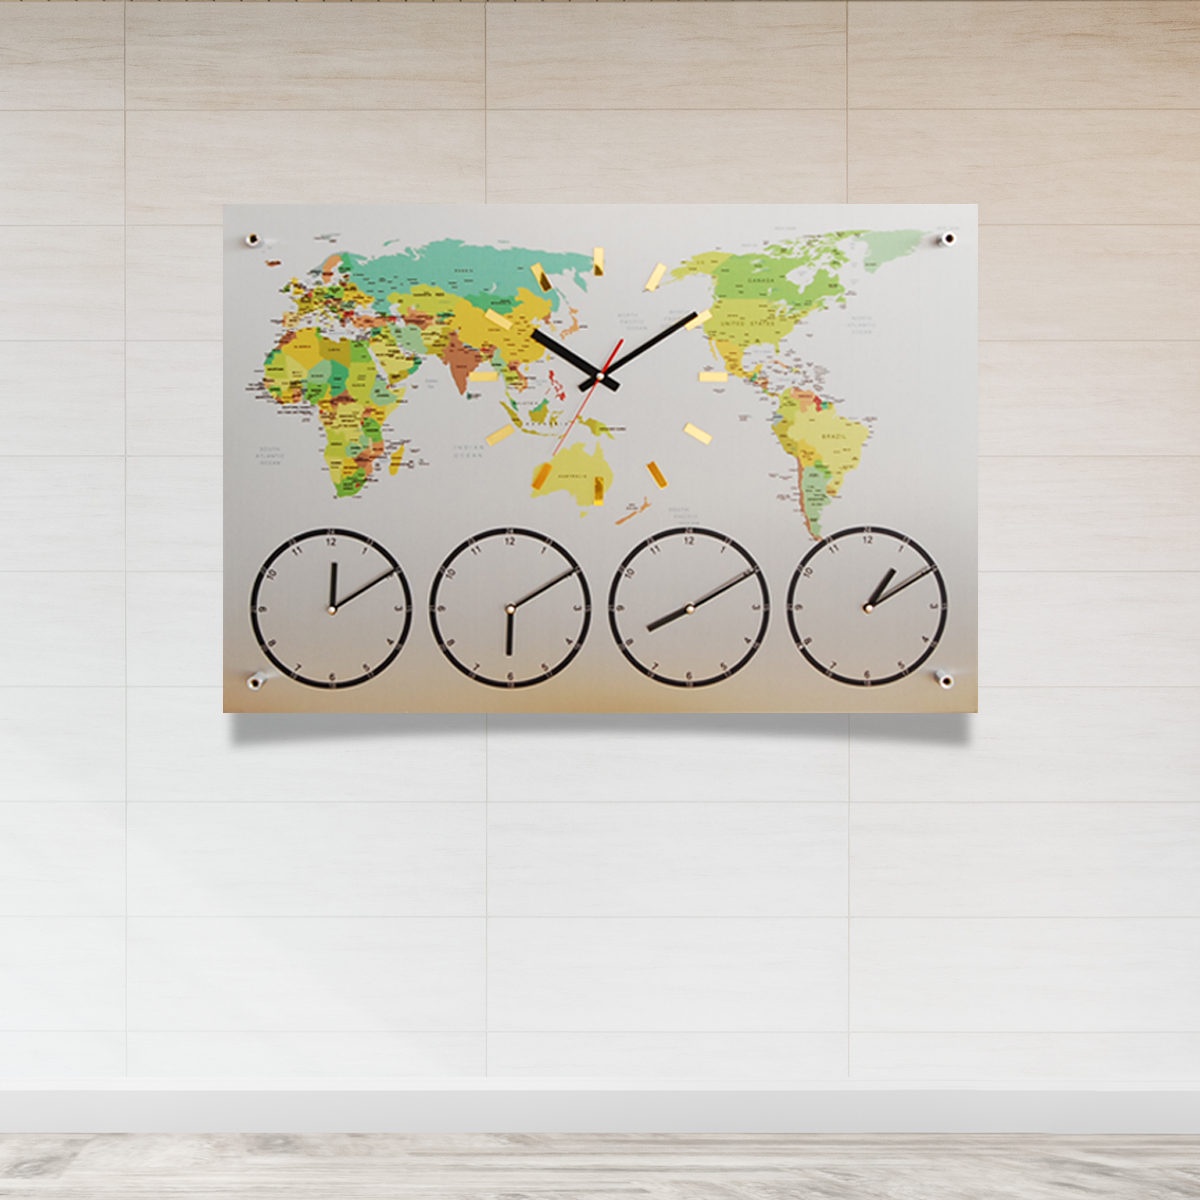 국산제작정품 월드타임벽시계-중형 80cm 다국적세계벽시계 세계시간표시